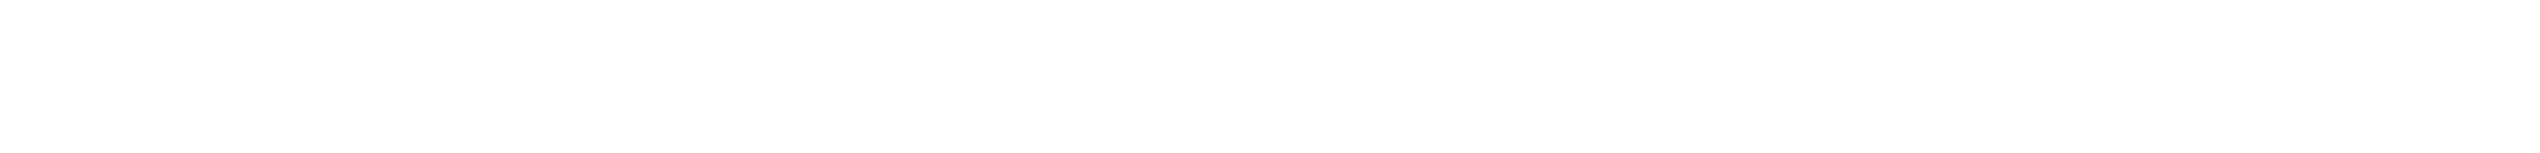 canalplus logo header